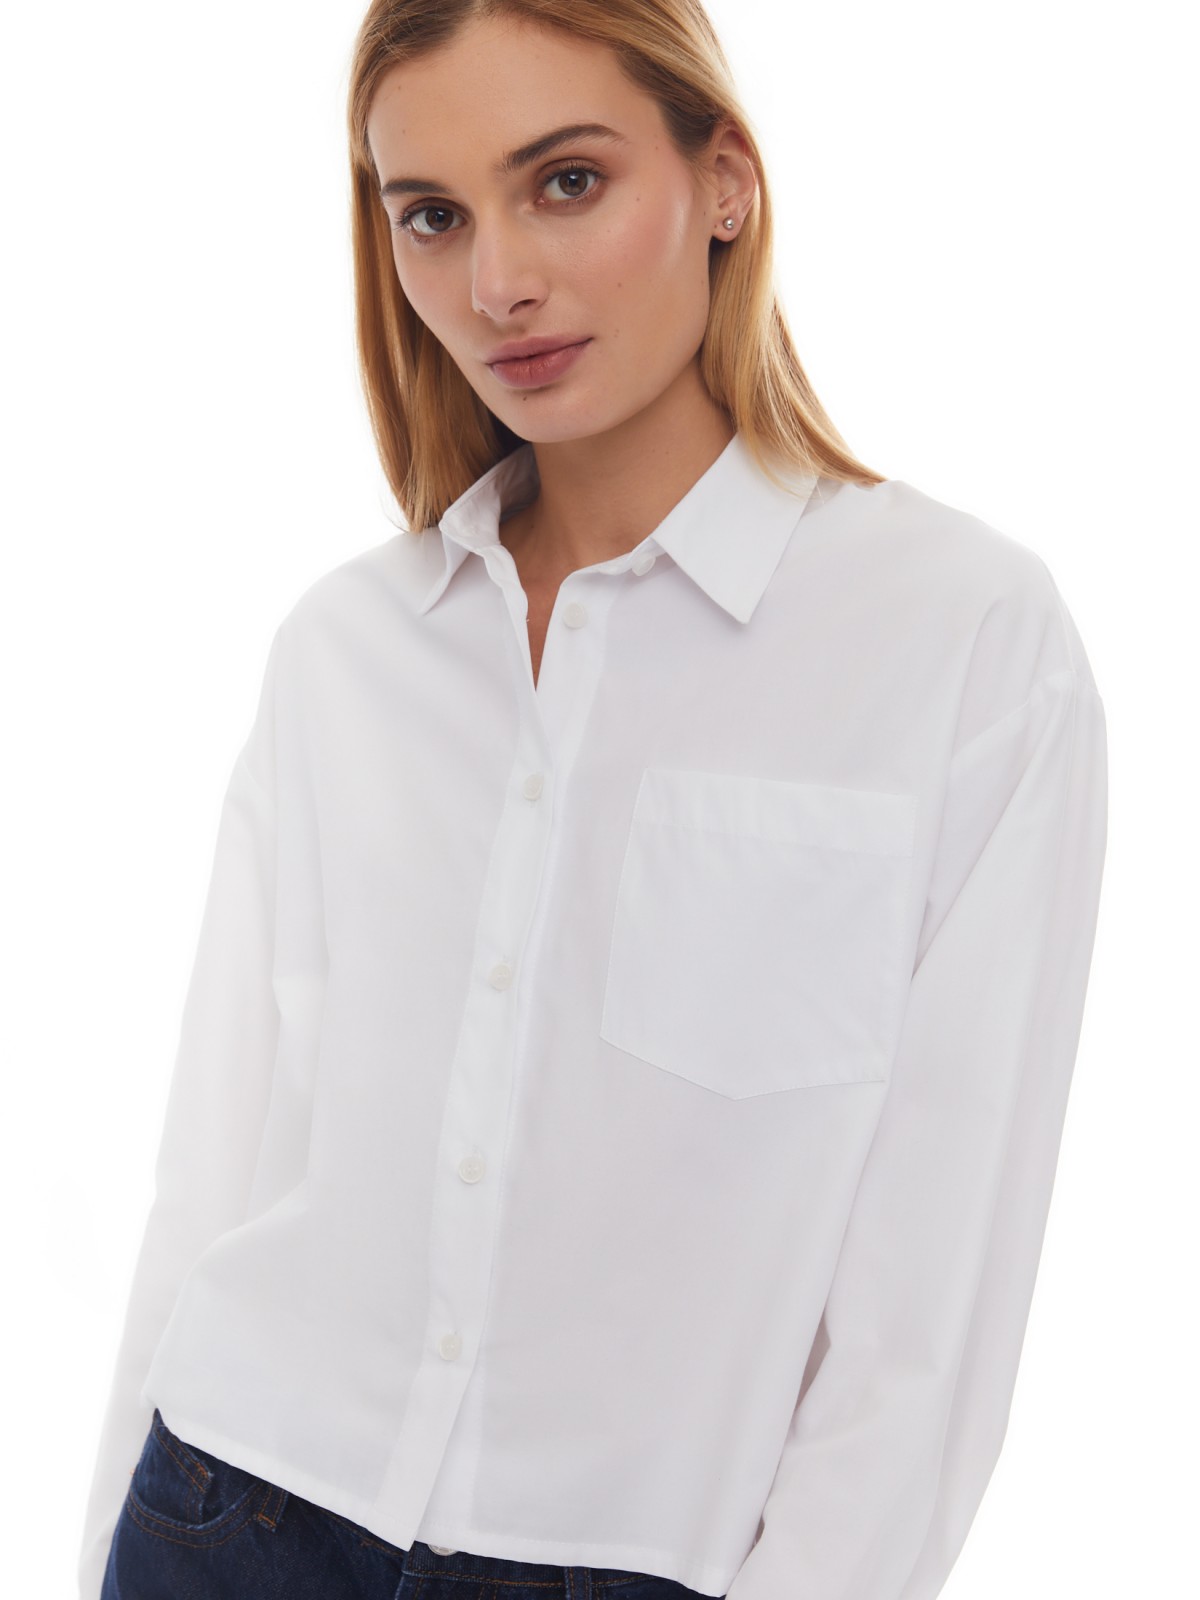 Укороченная рубашка оверсайз силуэта zolla 02412118Y043, цвет белый, размер XXS - фото 3